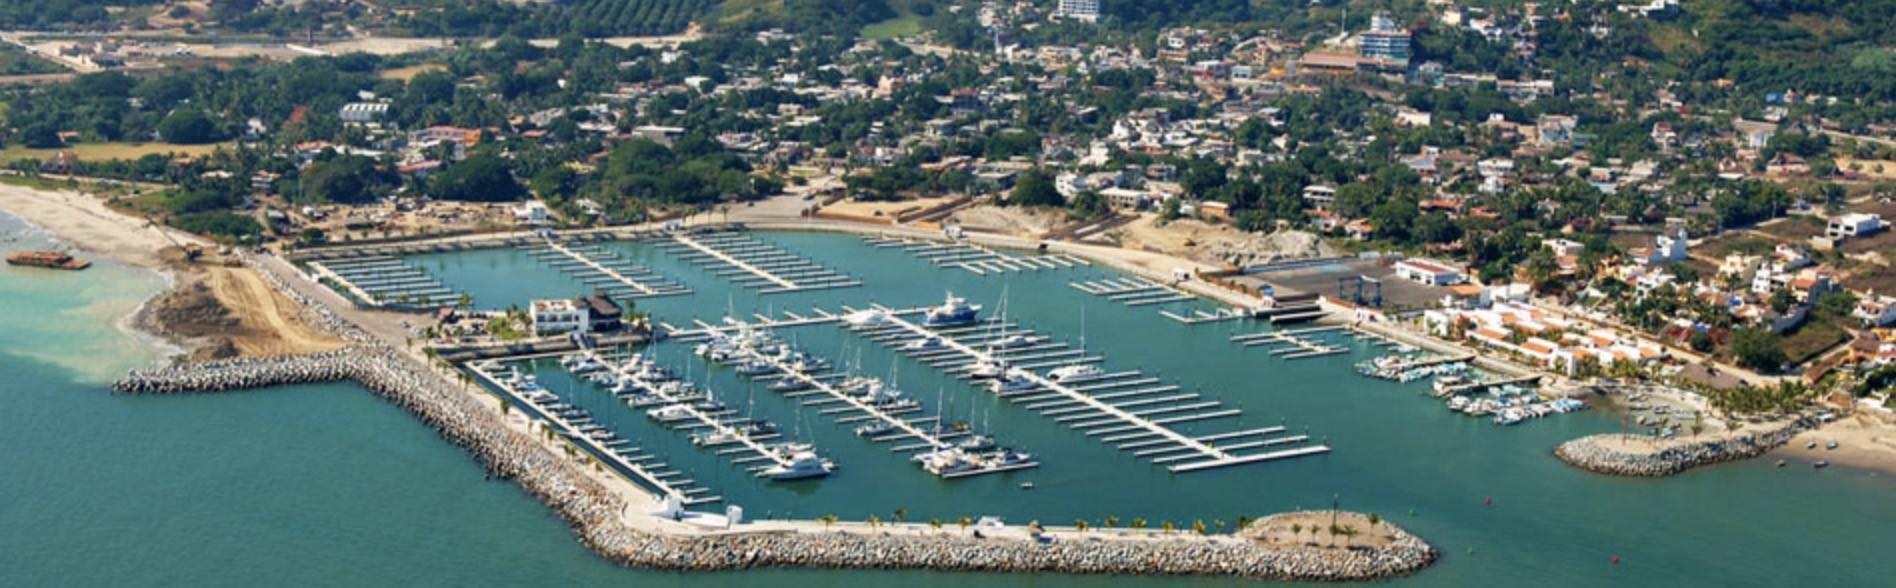 La Cruz Marina